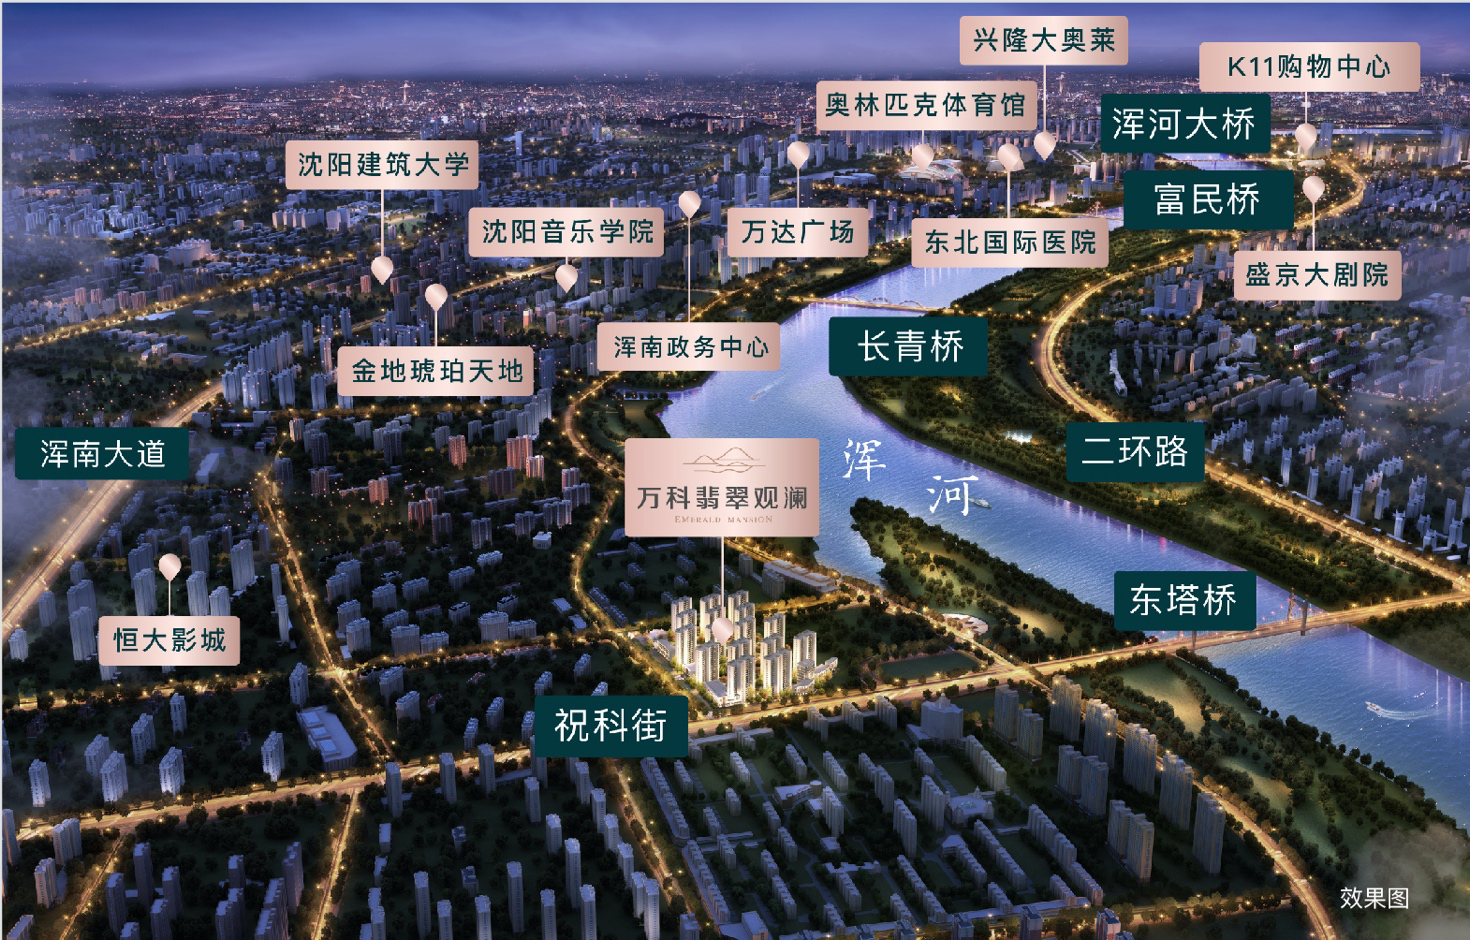 沈阳万科致敬城市焕新 以全新迭代之作引领改善新方向-中国网地产